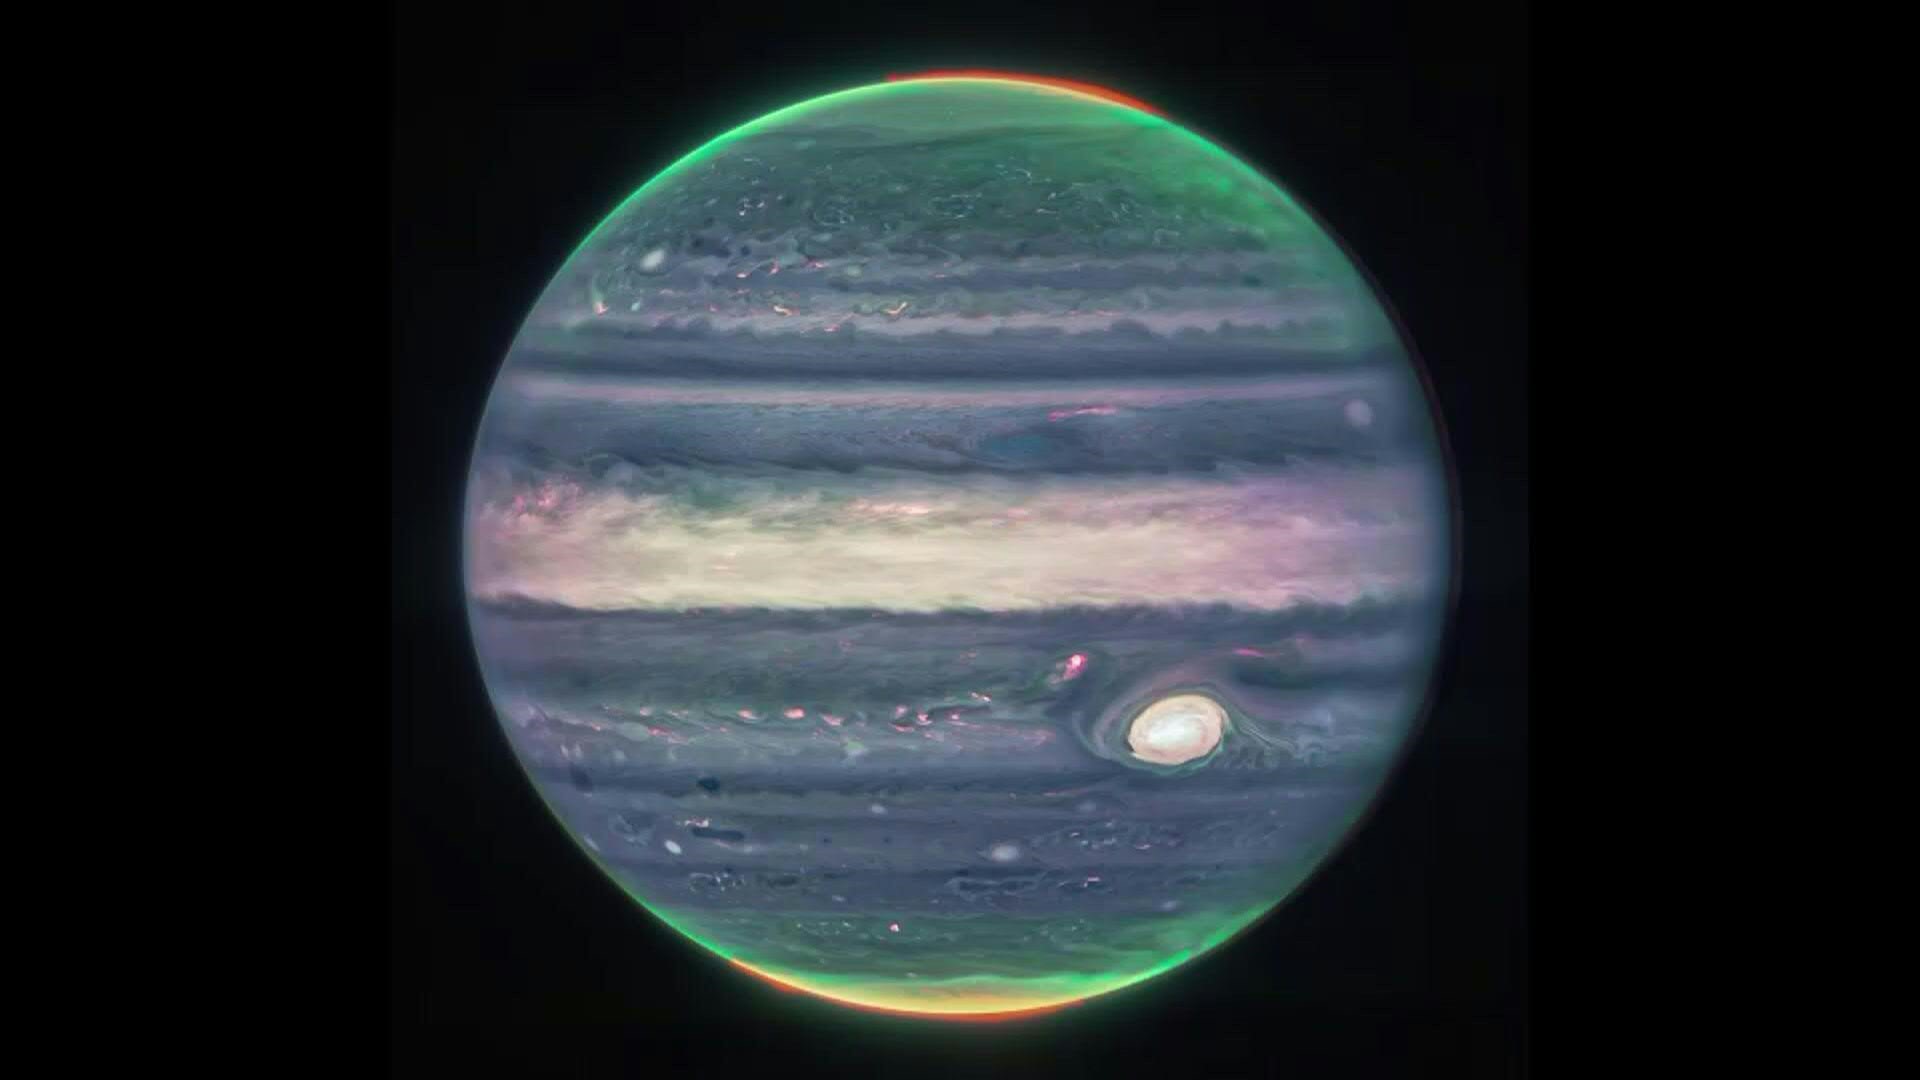 Impresionantes imágenes del planeta Júpiter, que muestran dos lunas diminutas, anillos tenues y auroras en los polos norte y sur, fueron tomadas por el telescopio espacial James Webb de la NASA, informó la agencia espacial estadounidense. (NASA)